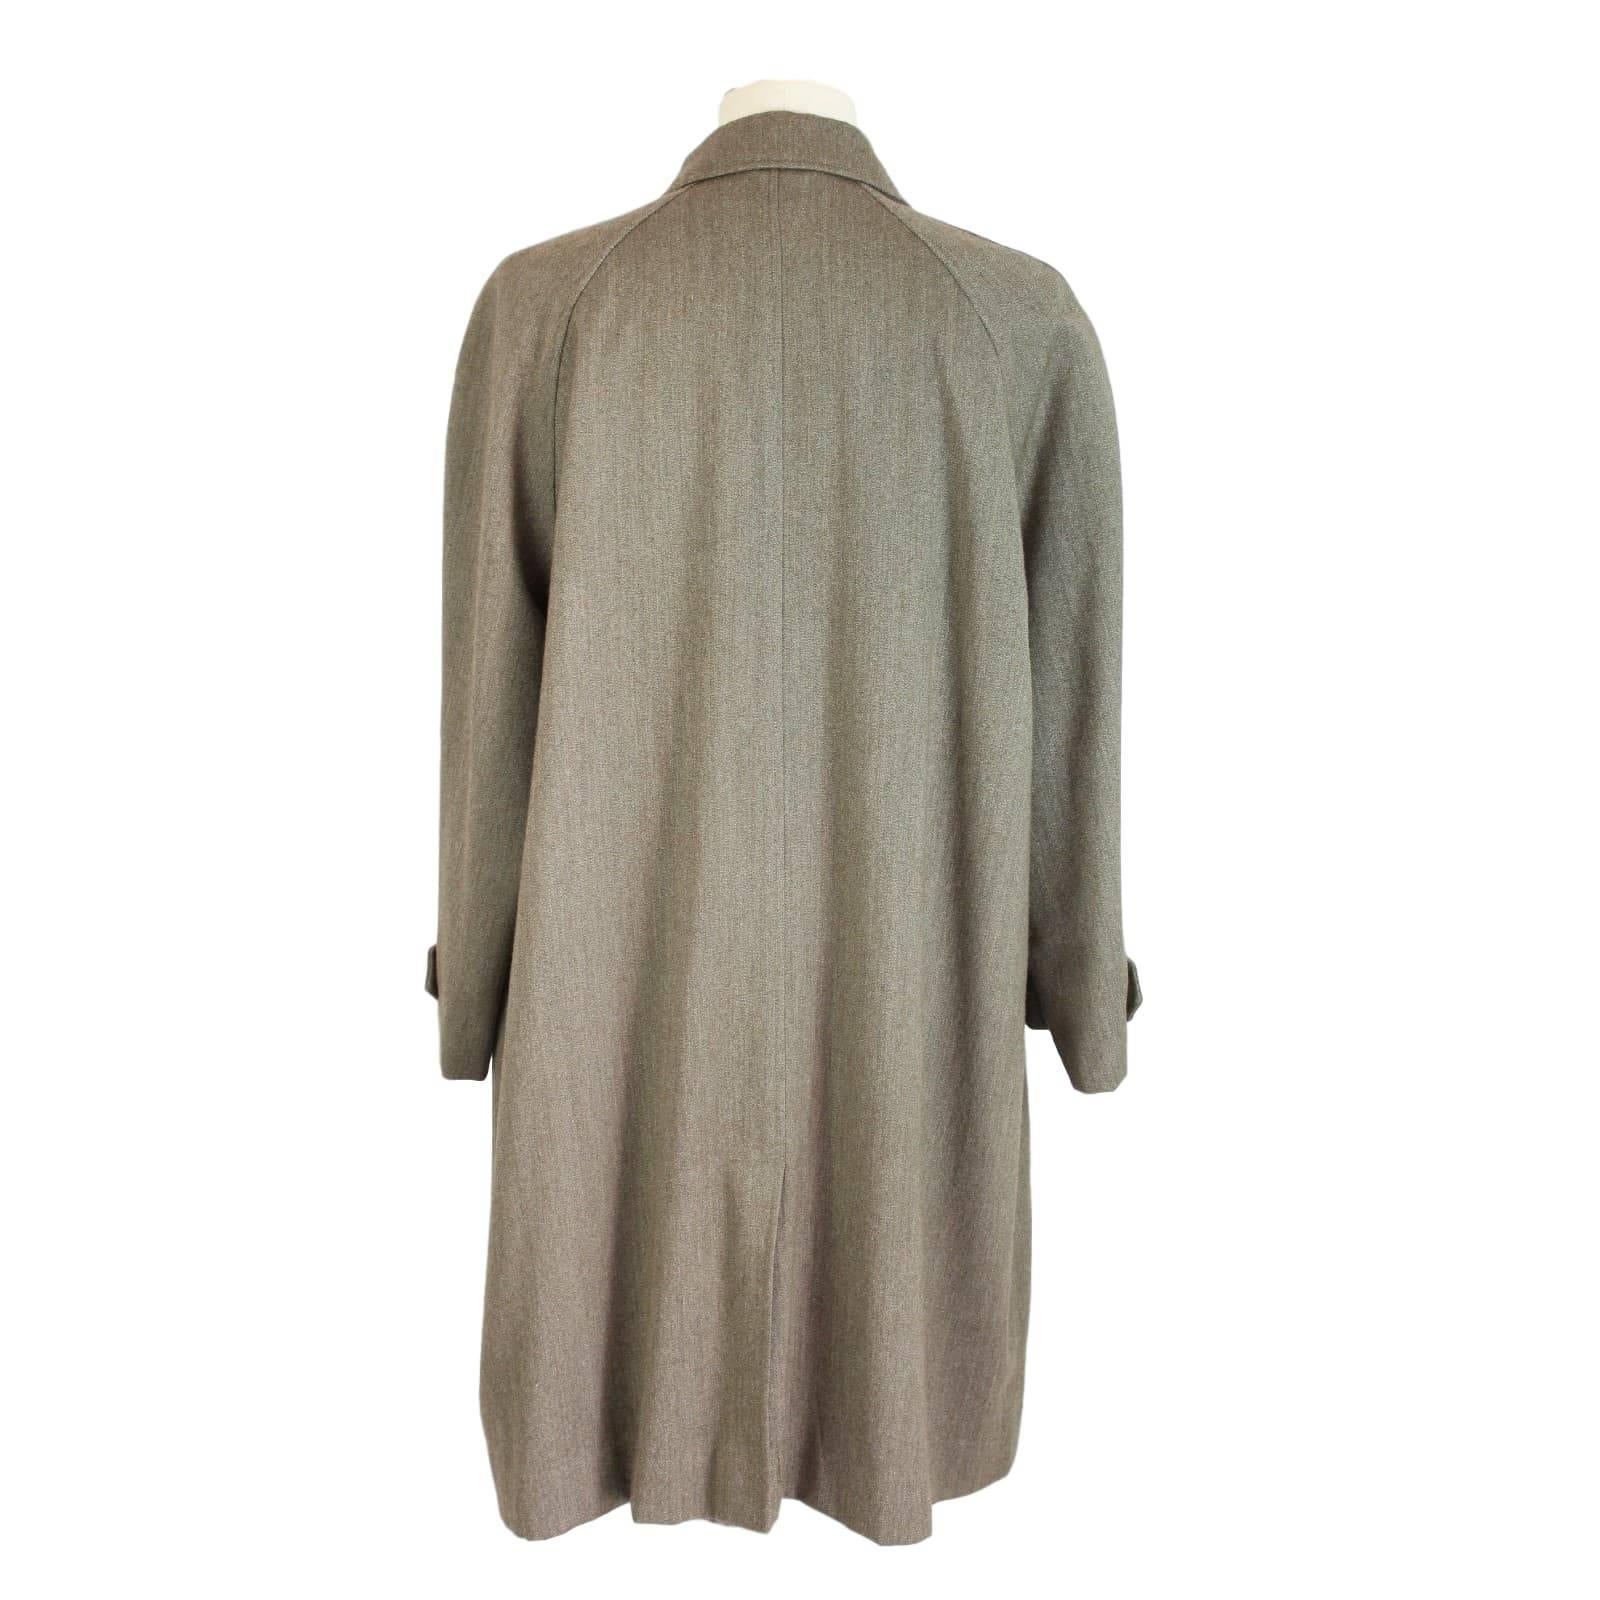 Beige Polo Ralph Lauren beige 100% wool coat trench raincoat size M vintage 1990s